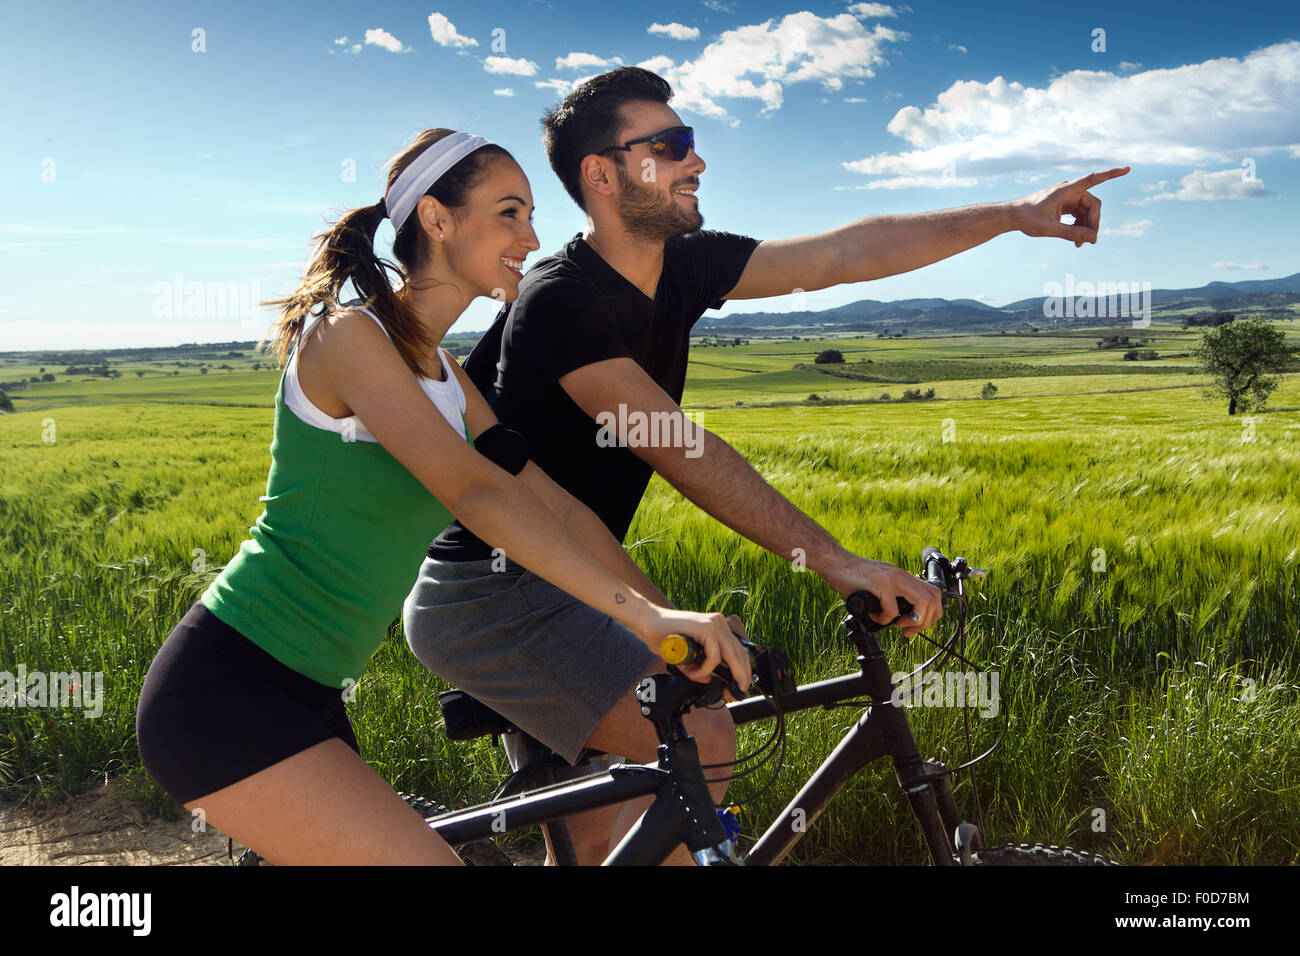 Общие интересы ближе. Счастливые пары на велосипеде. Счастливые молодые на велосипеде. Влюбленные Общие интересы. Мужчина и женщина катаются на велосипеде.